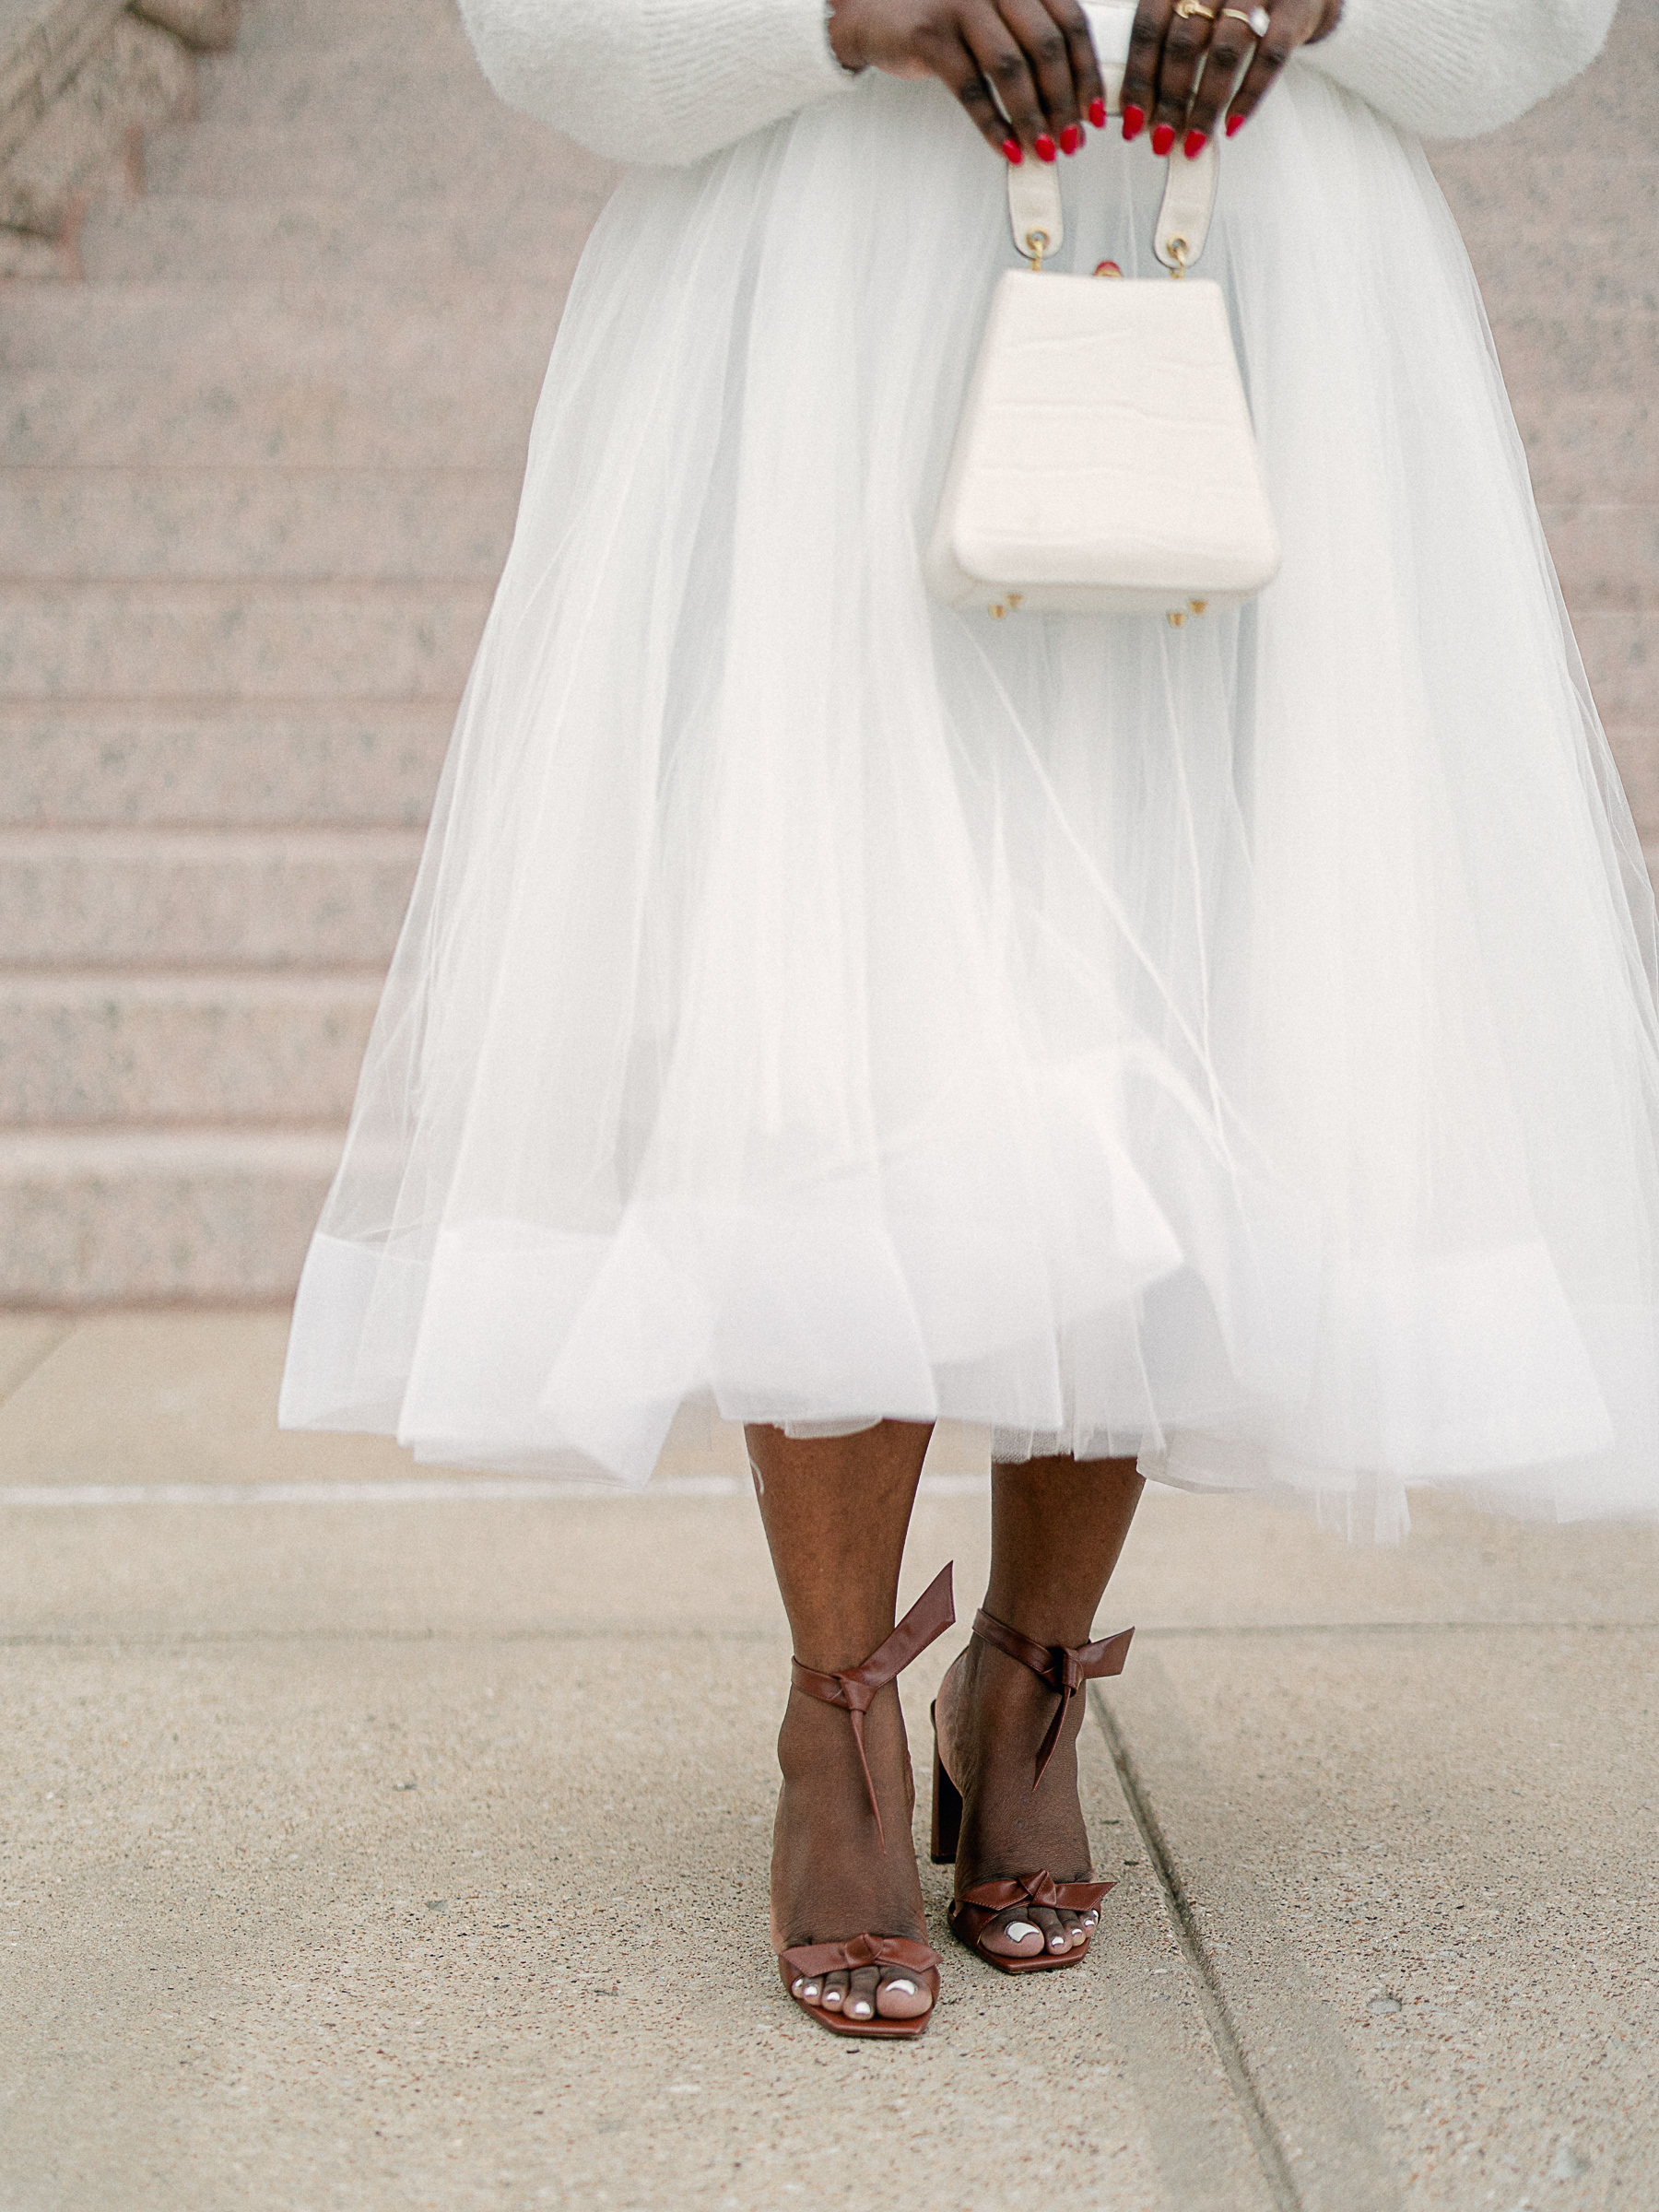 Alexandre Birman Clarita Sandals - White Tulle Skirt wedding inspo